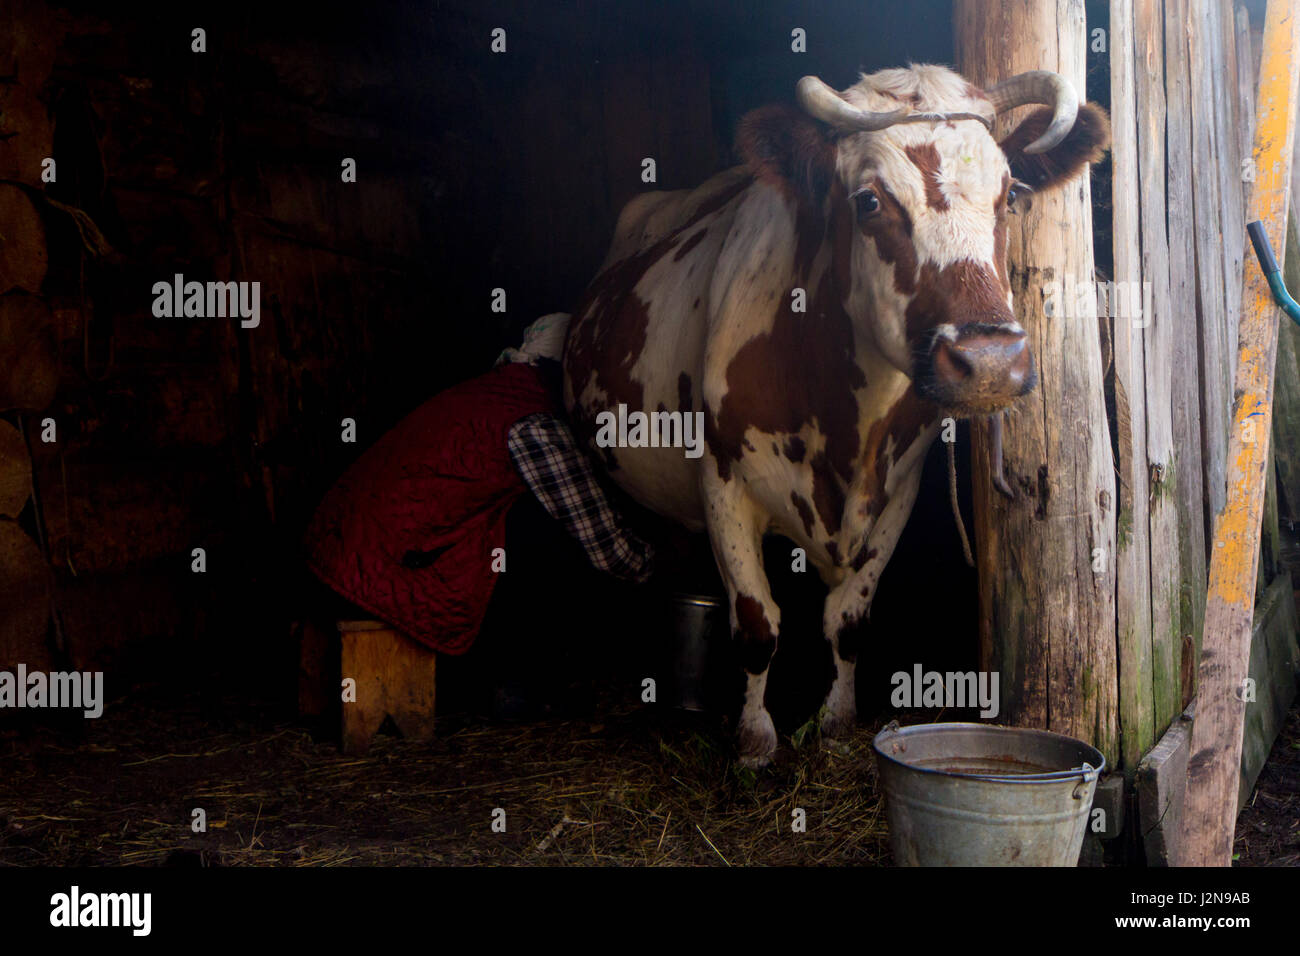 Vieille Femme est traire une vache dans une maison en bois Banque D'Images